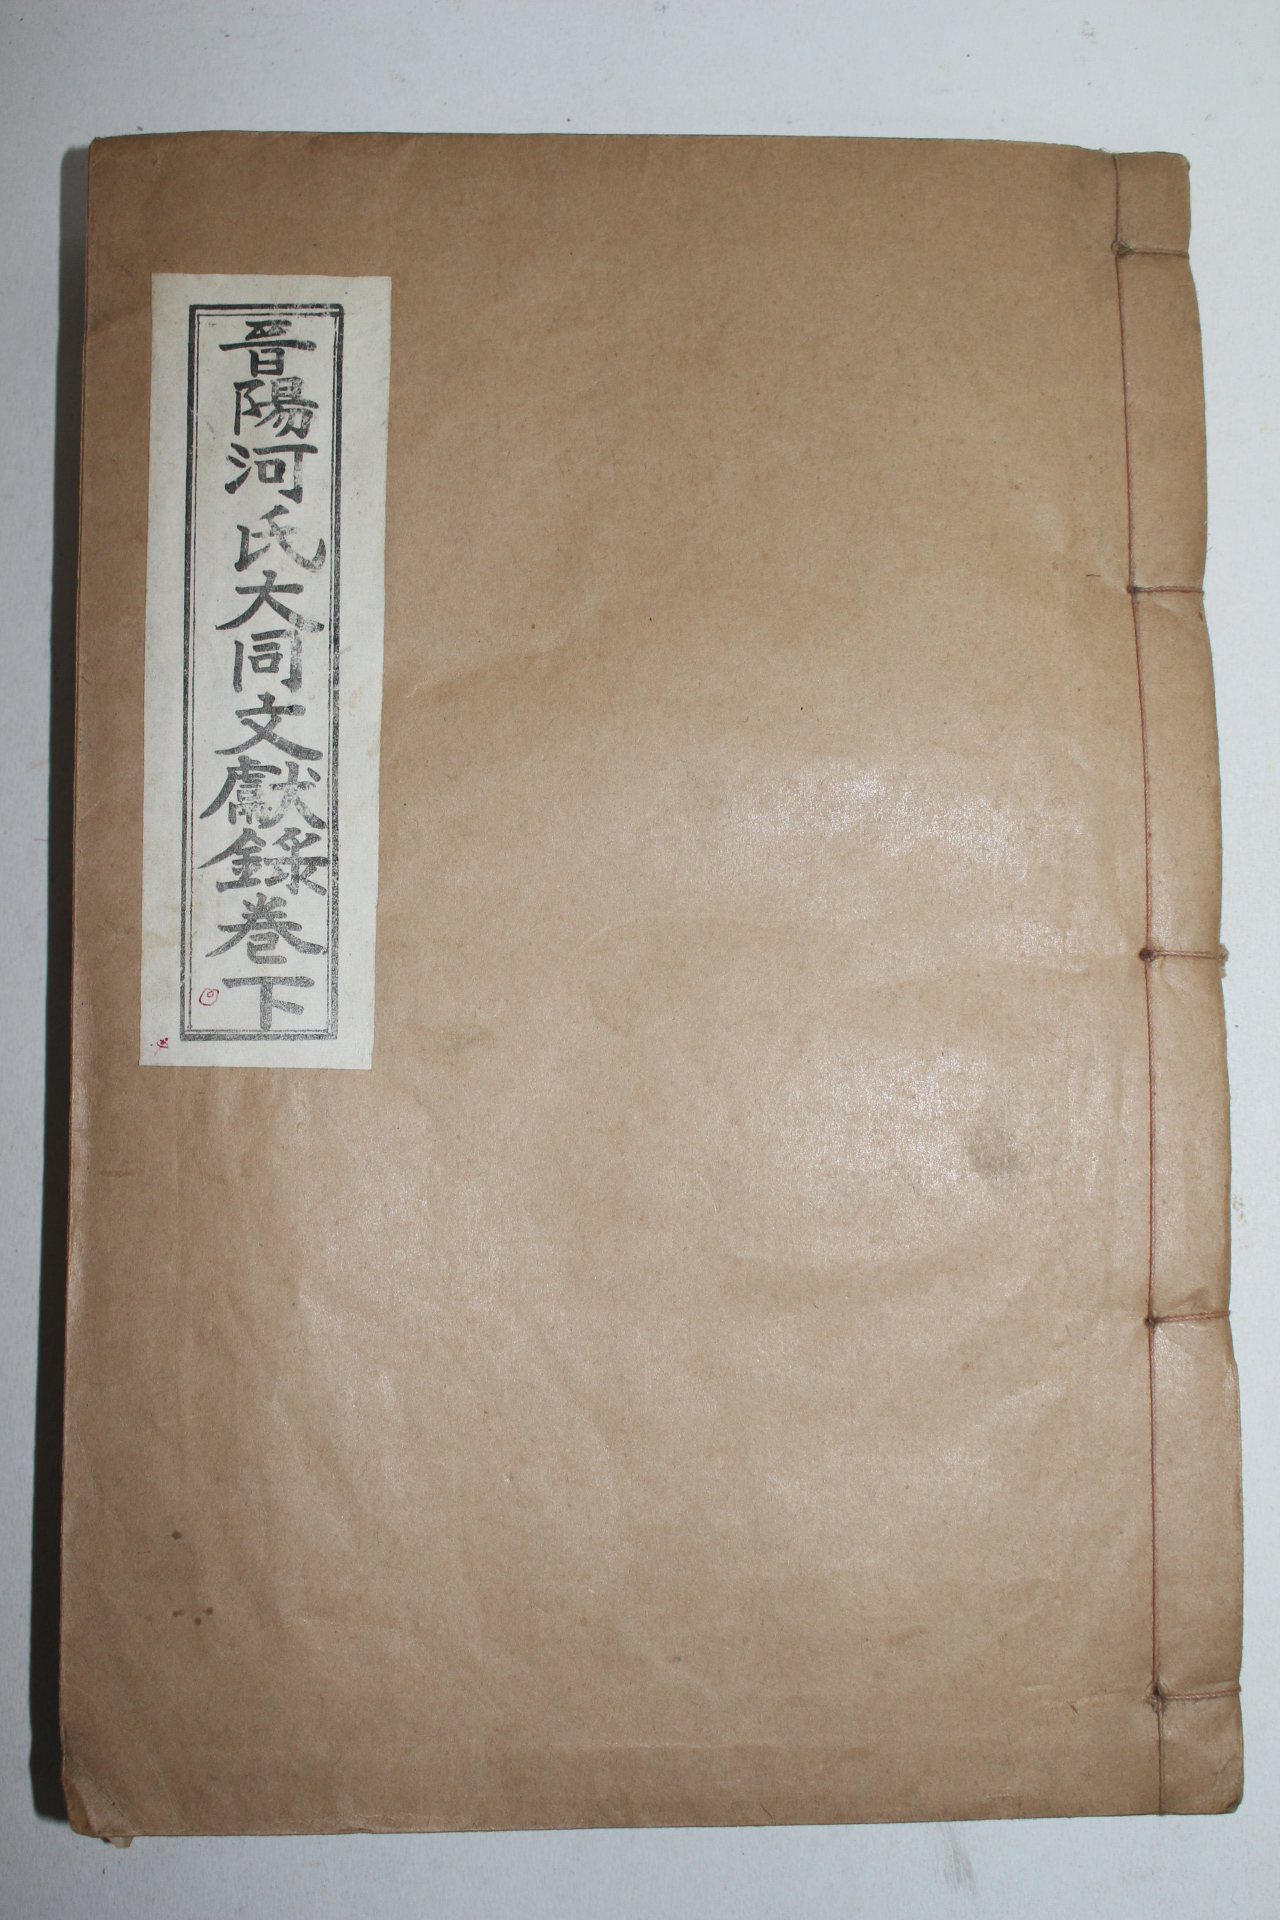 1969년(단기4302년) 석판본 진양하씨대동문헌록(晉陽河氏大同文獻錄)하권 1책